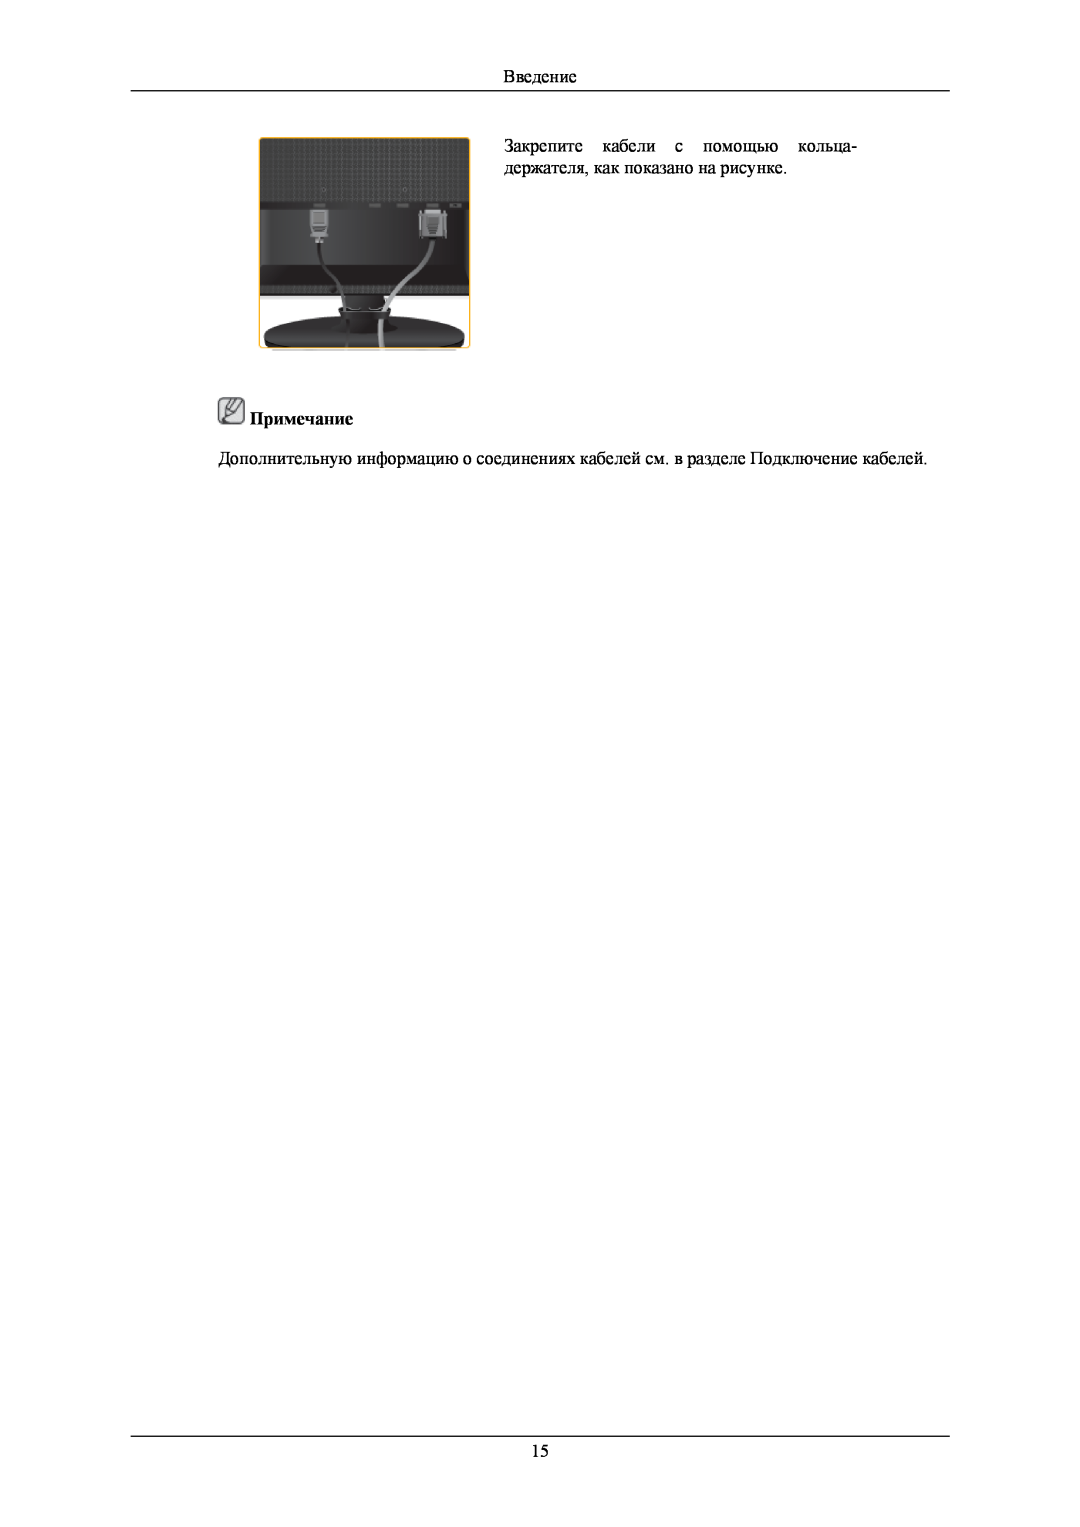 Samsung LS22LIUJFV/EN manual Введение, Закрепите кабели с помощью кольца- держателя, как показано на рисунке, Примечание 